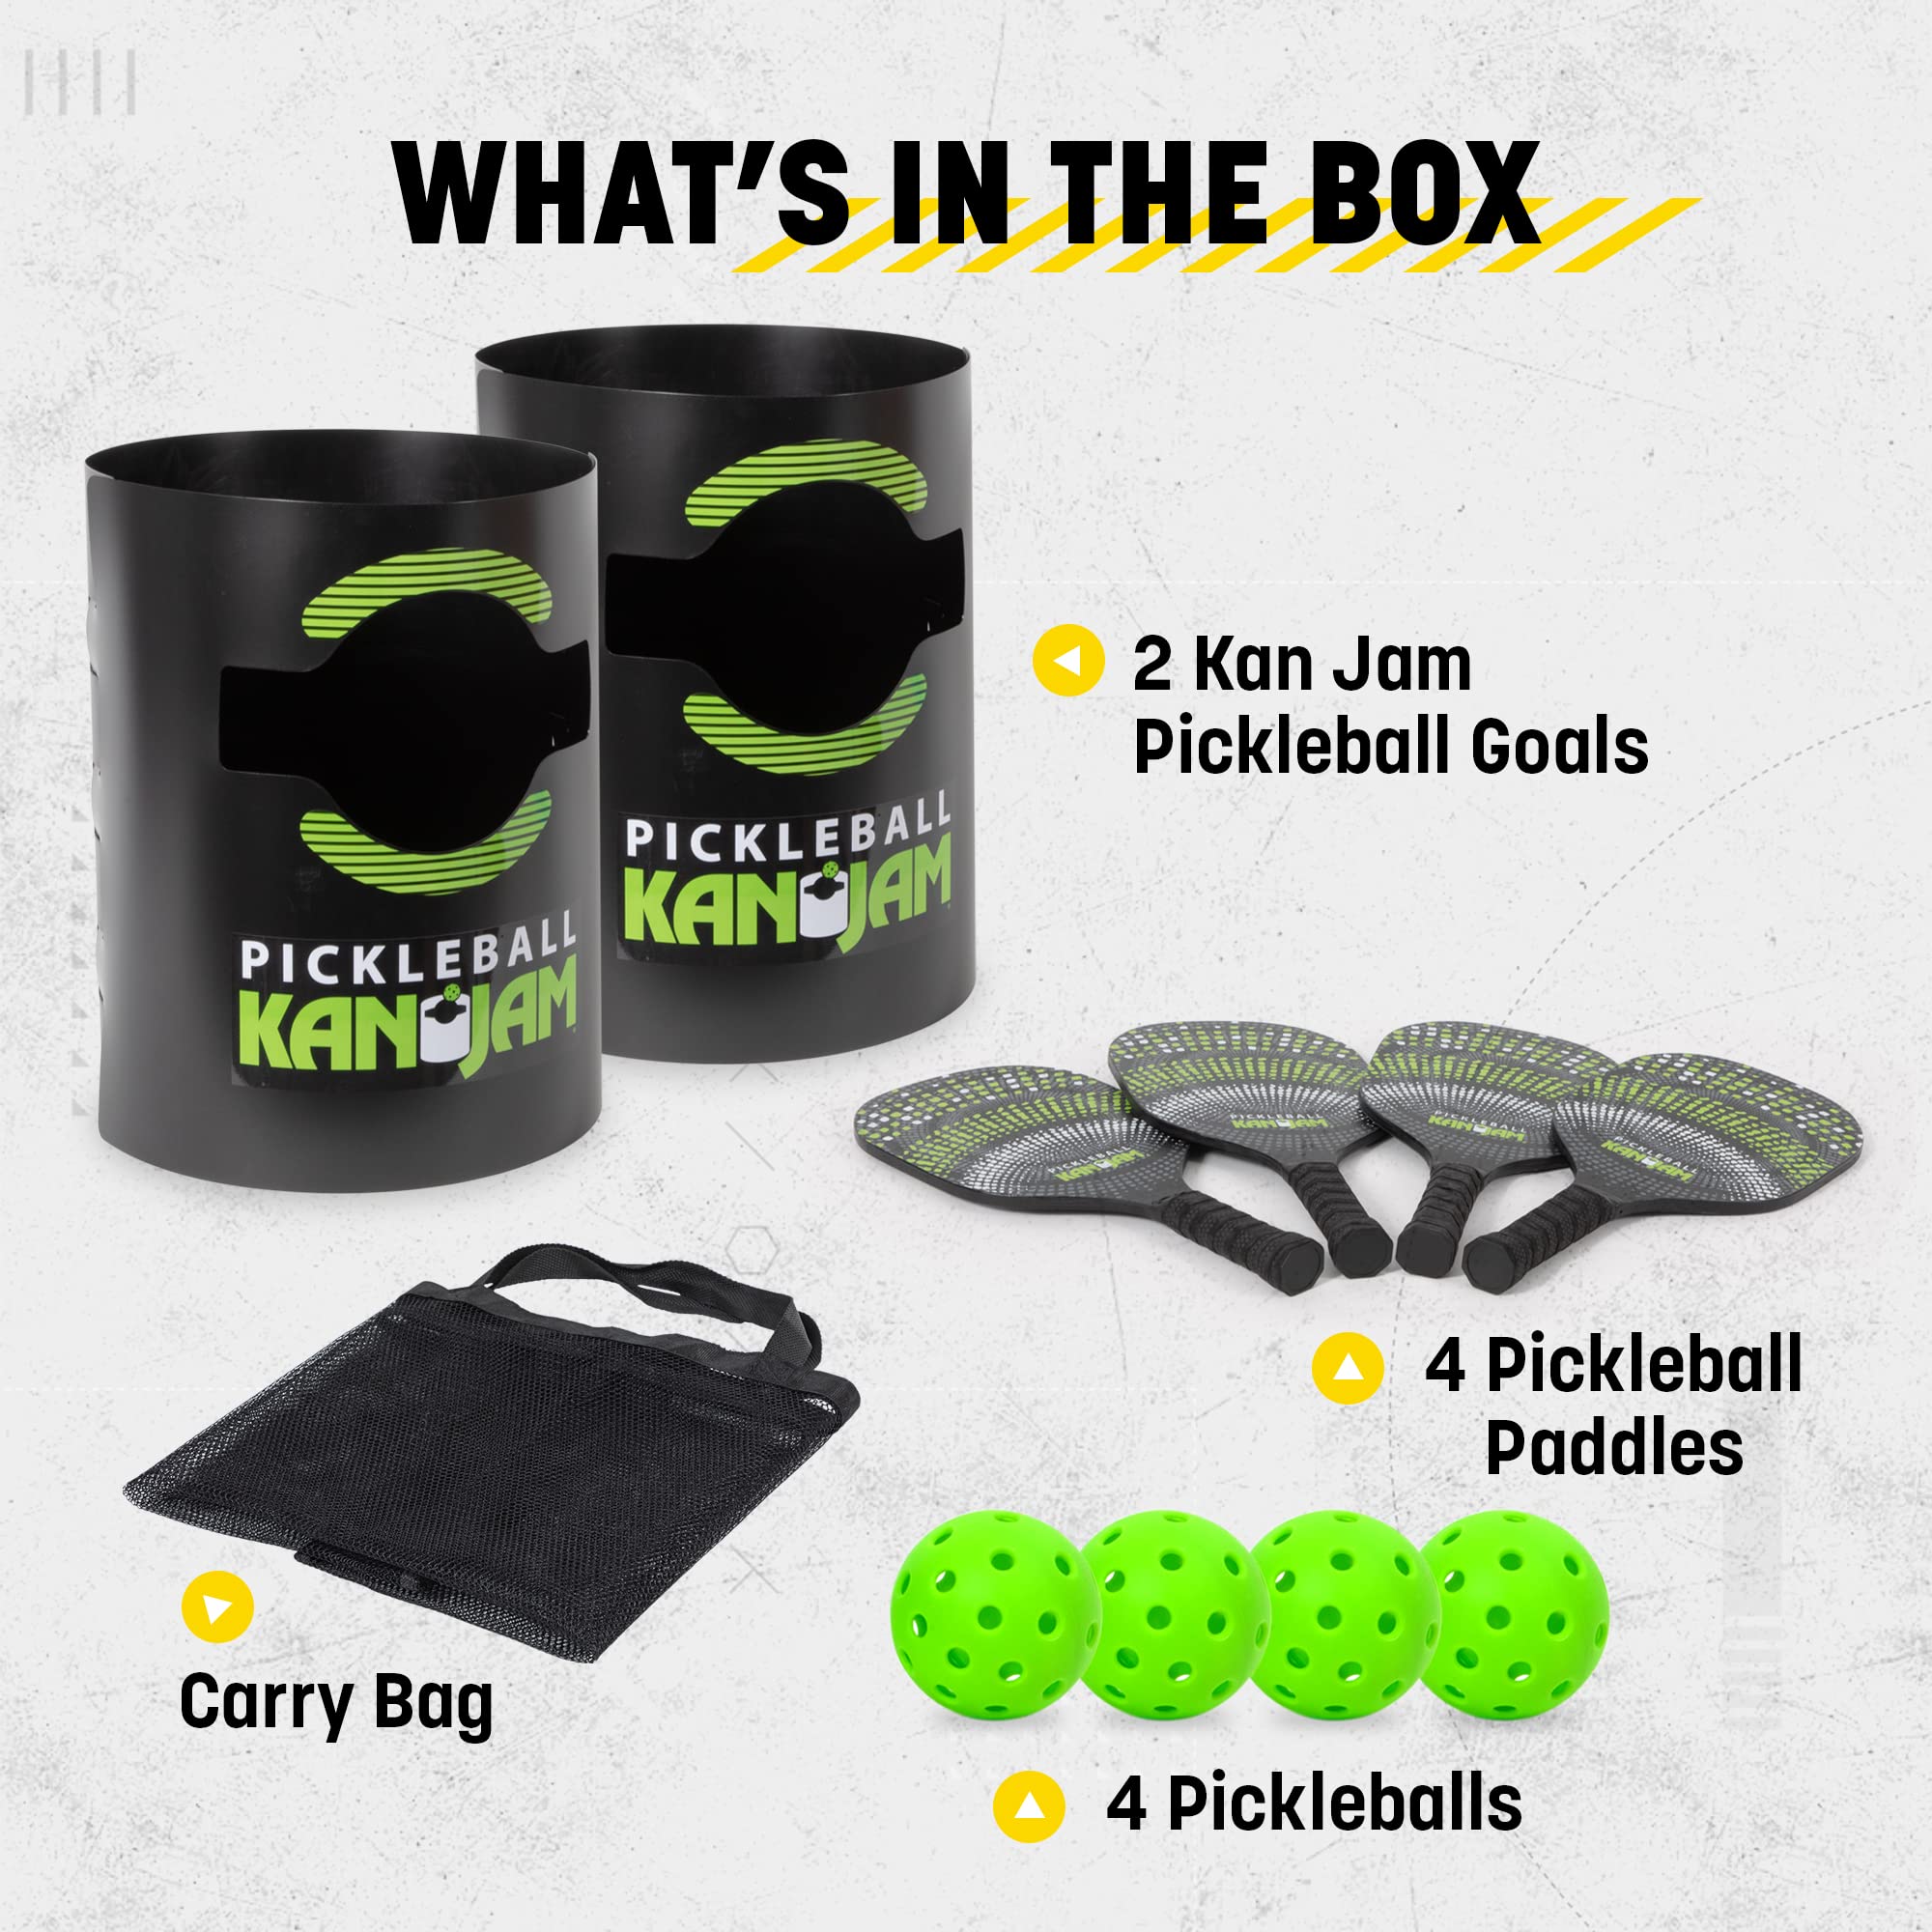 Kan Jam Pickleball - Play Pickleball Anywhere - Team Based Pickle Ball Game - Includes 4 Pickleball Paddles & 4 Pickleballs,Black/Green